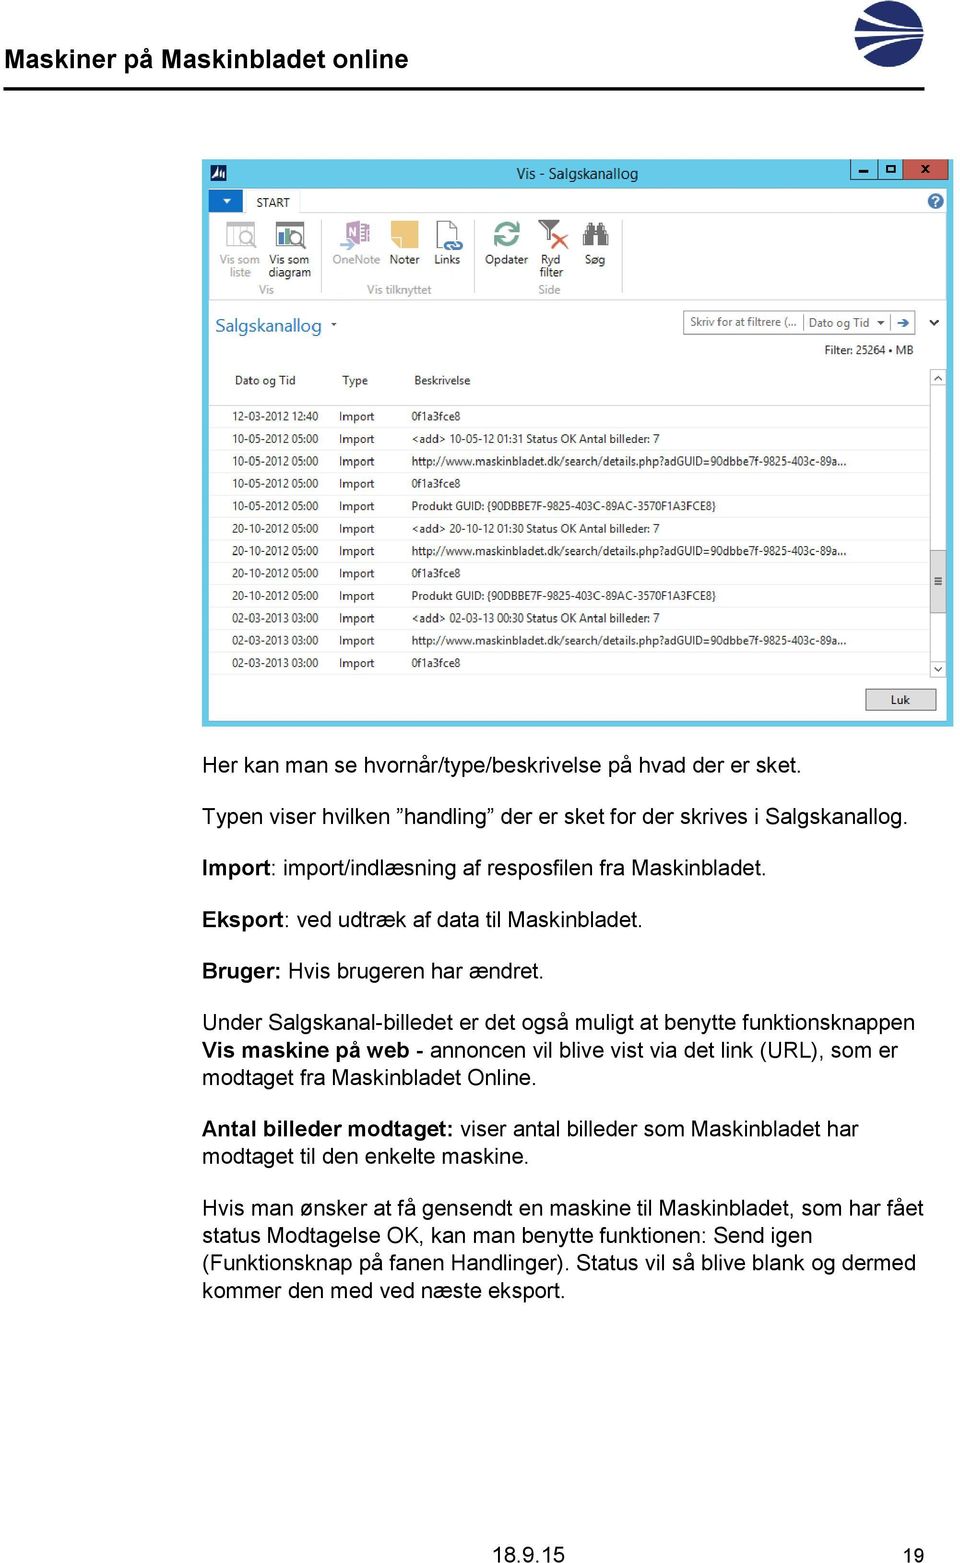 Under Salgskanal-billedet er det også muligt at benytte funktionsknappen Vis maskine på web - annoncen vil blive vist via det link (URL), som er modtaget fra Maskinbladet Online.